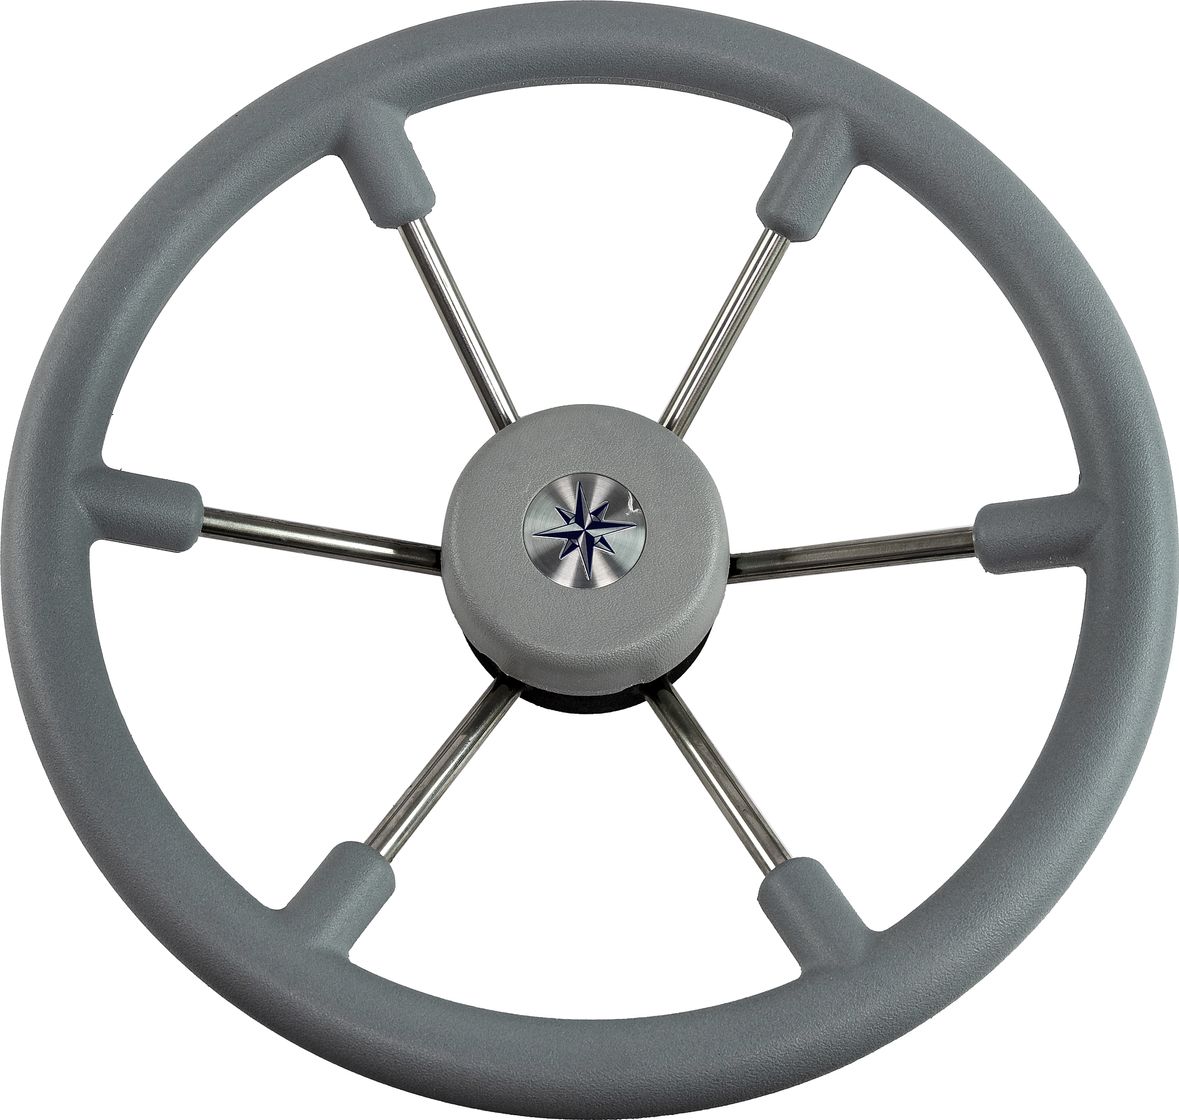 Рулевое колесо LEADER TANEGUM серый обод серебряные спицы д. 360 мм VN7360-03 рулевое колесо leader tanegum серый обод серебряные спицы д 330 мм vn7330 03